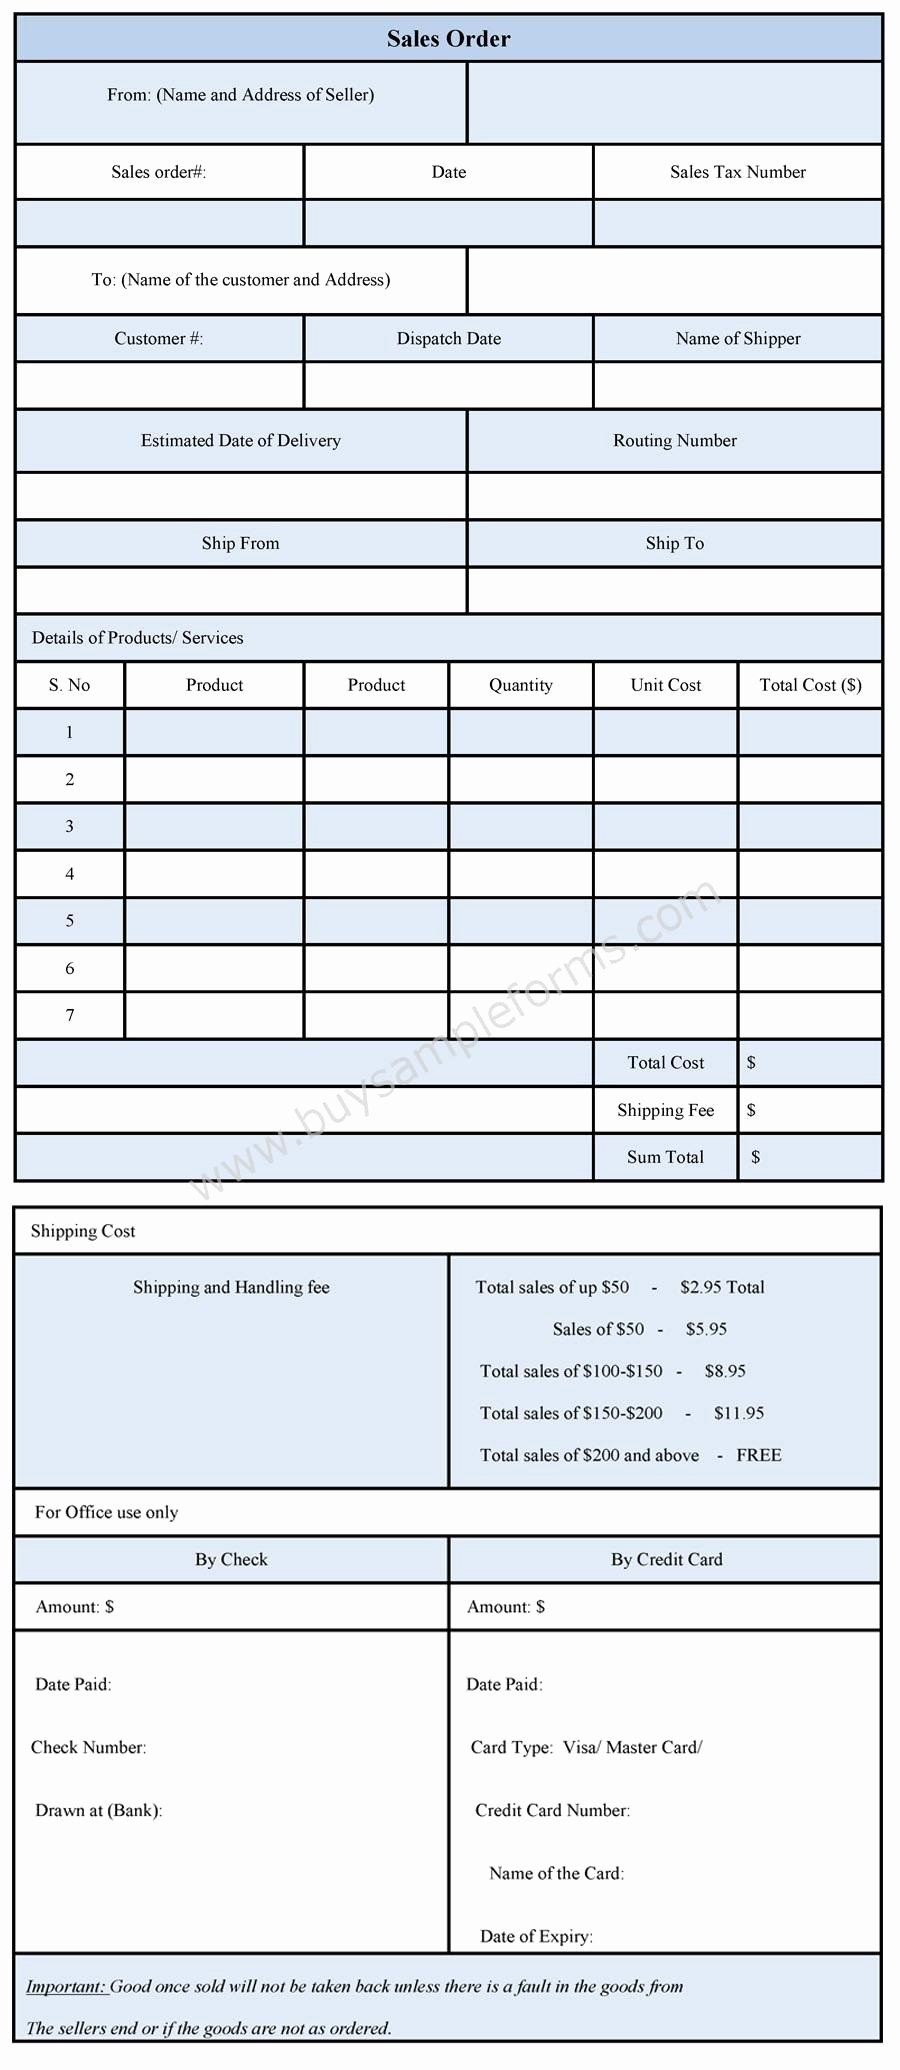 Sales order form